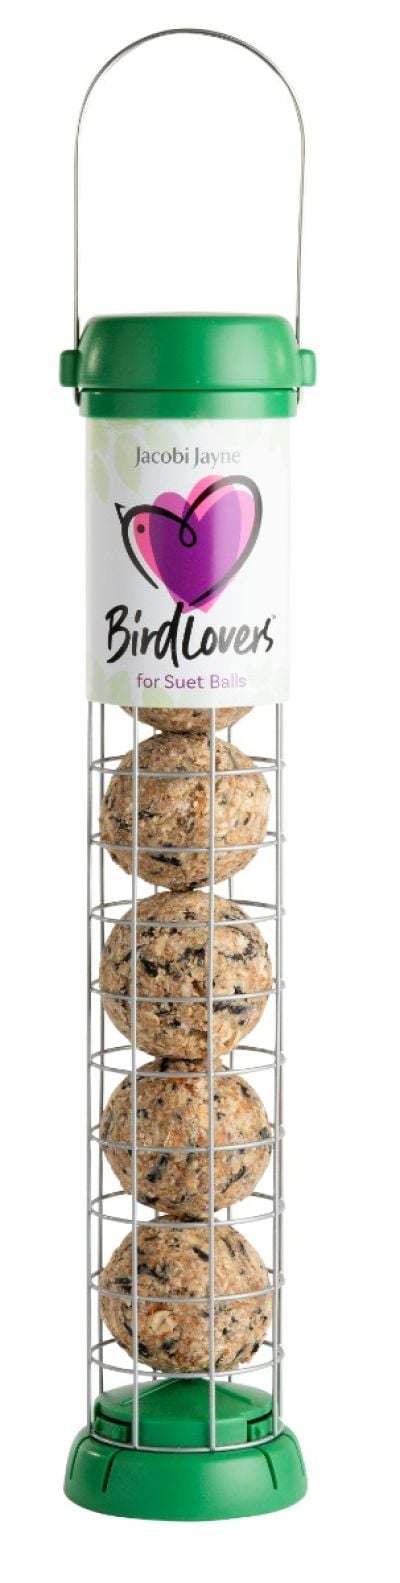 Bird Lovers Suet Fat Ball Feeder